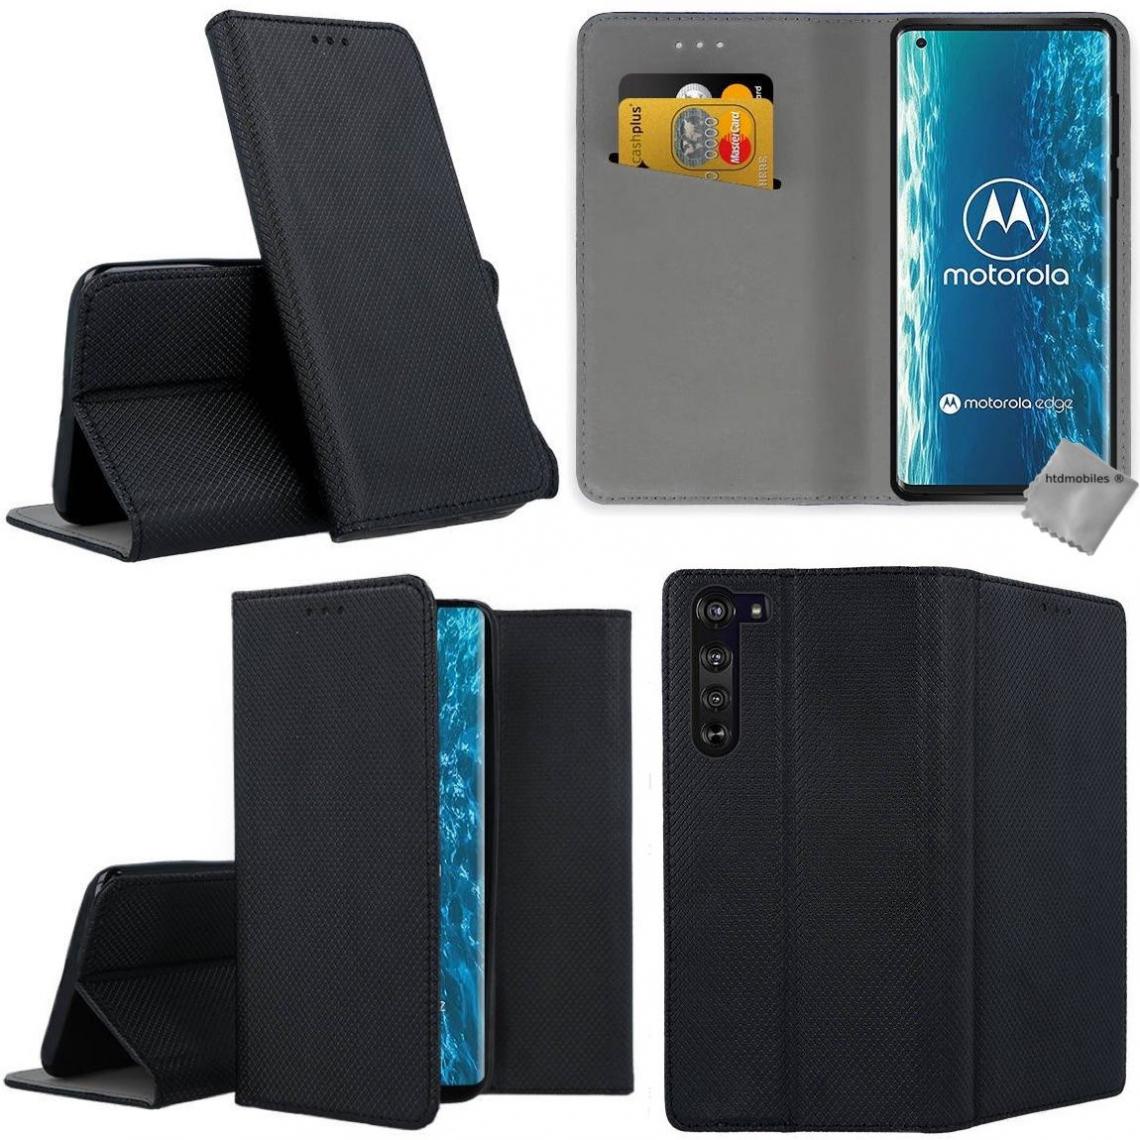 Htdmobiles - Housse etui coque pochette portefeuille pour Motorola Edge + verre trempe - NOIR MAGNET - Coque, étui smartphone